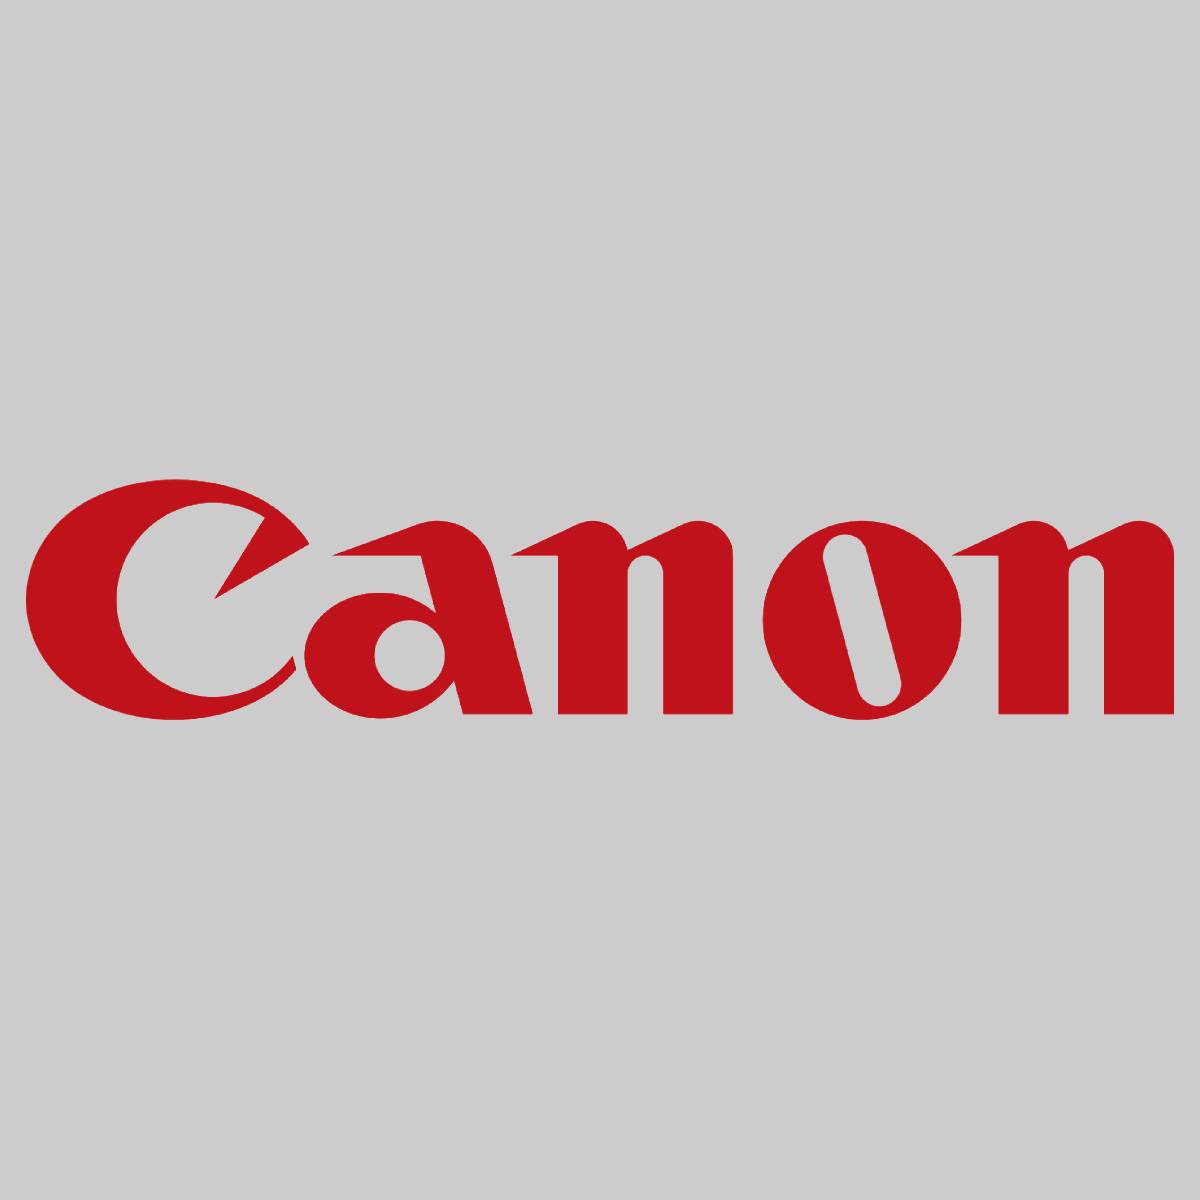 "Original Canon Toner C-EXV16 Magenta 1067B002 für CLC 4040 CLC 5151 NEU OVP